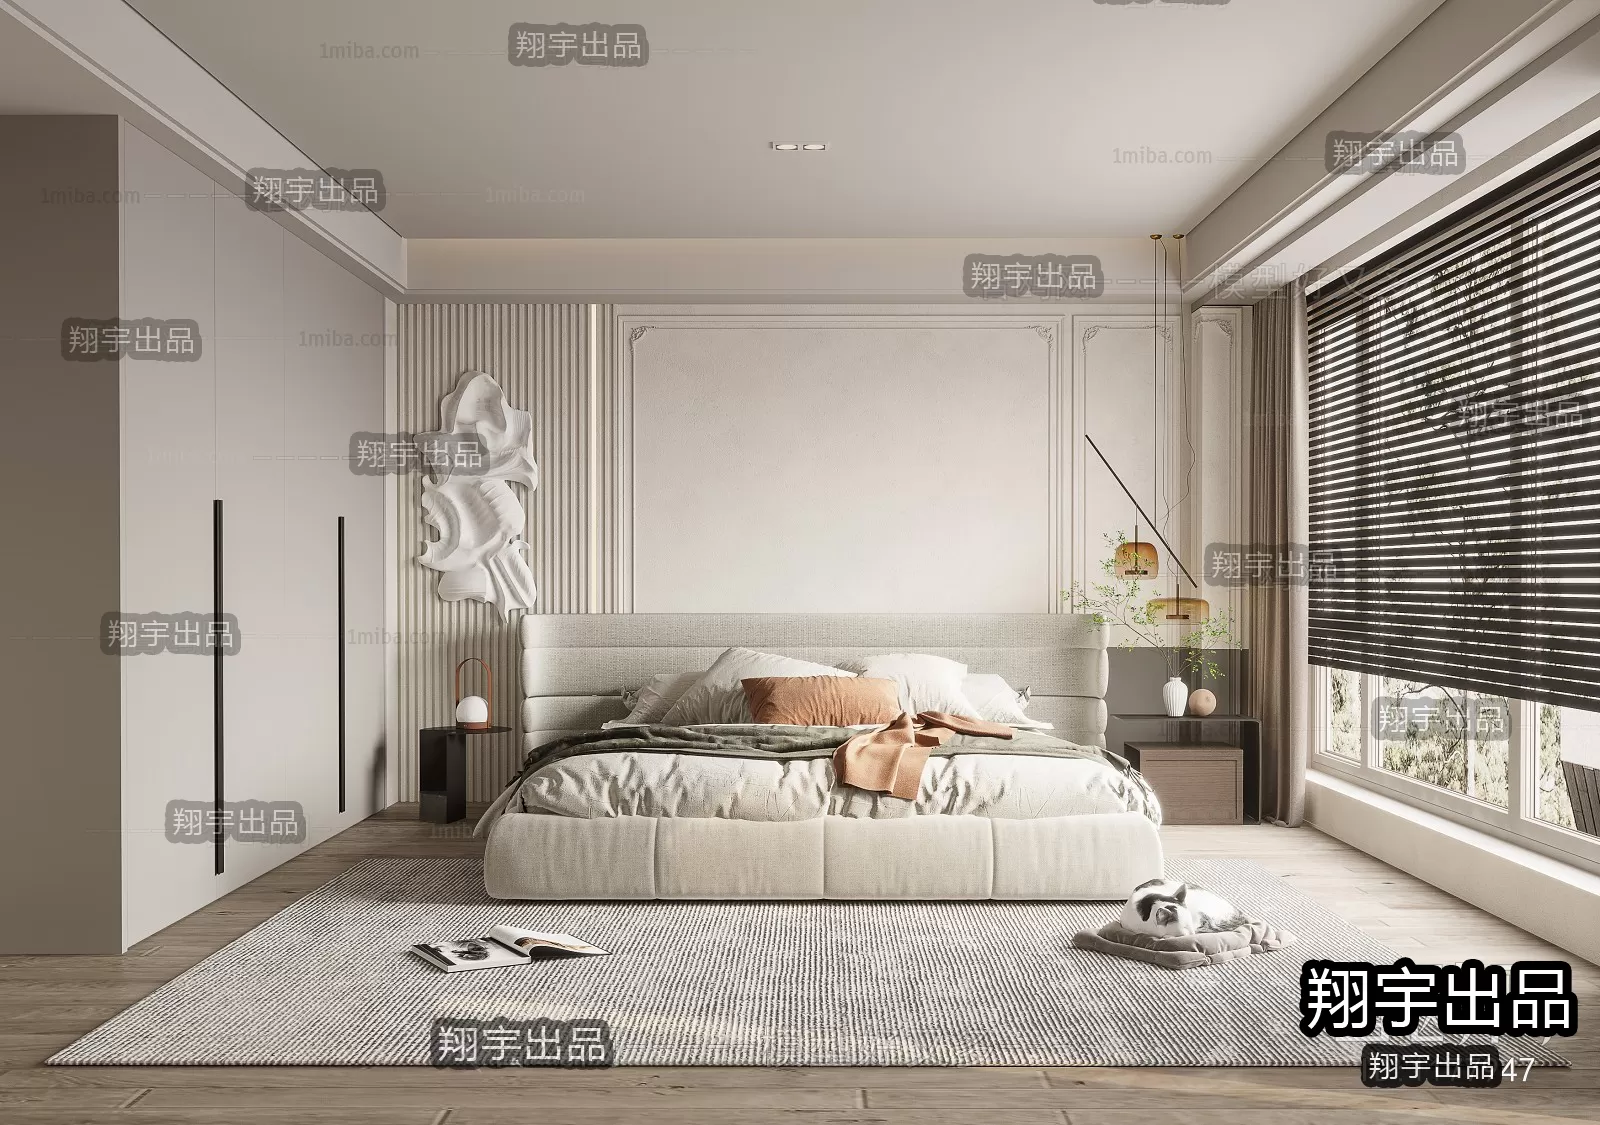 Bedroom – Modern Interior Design – 3D Models – 049